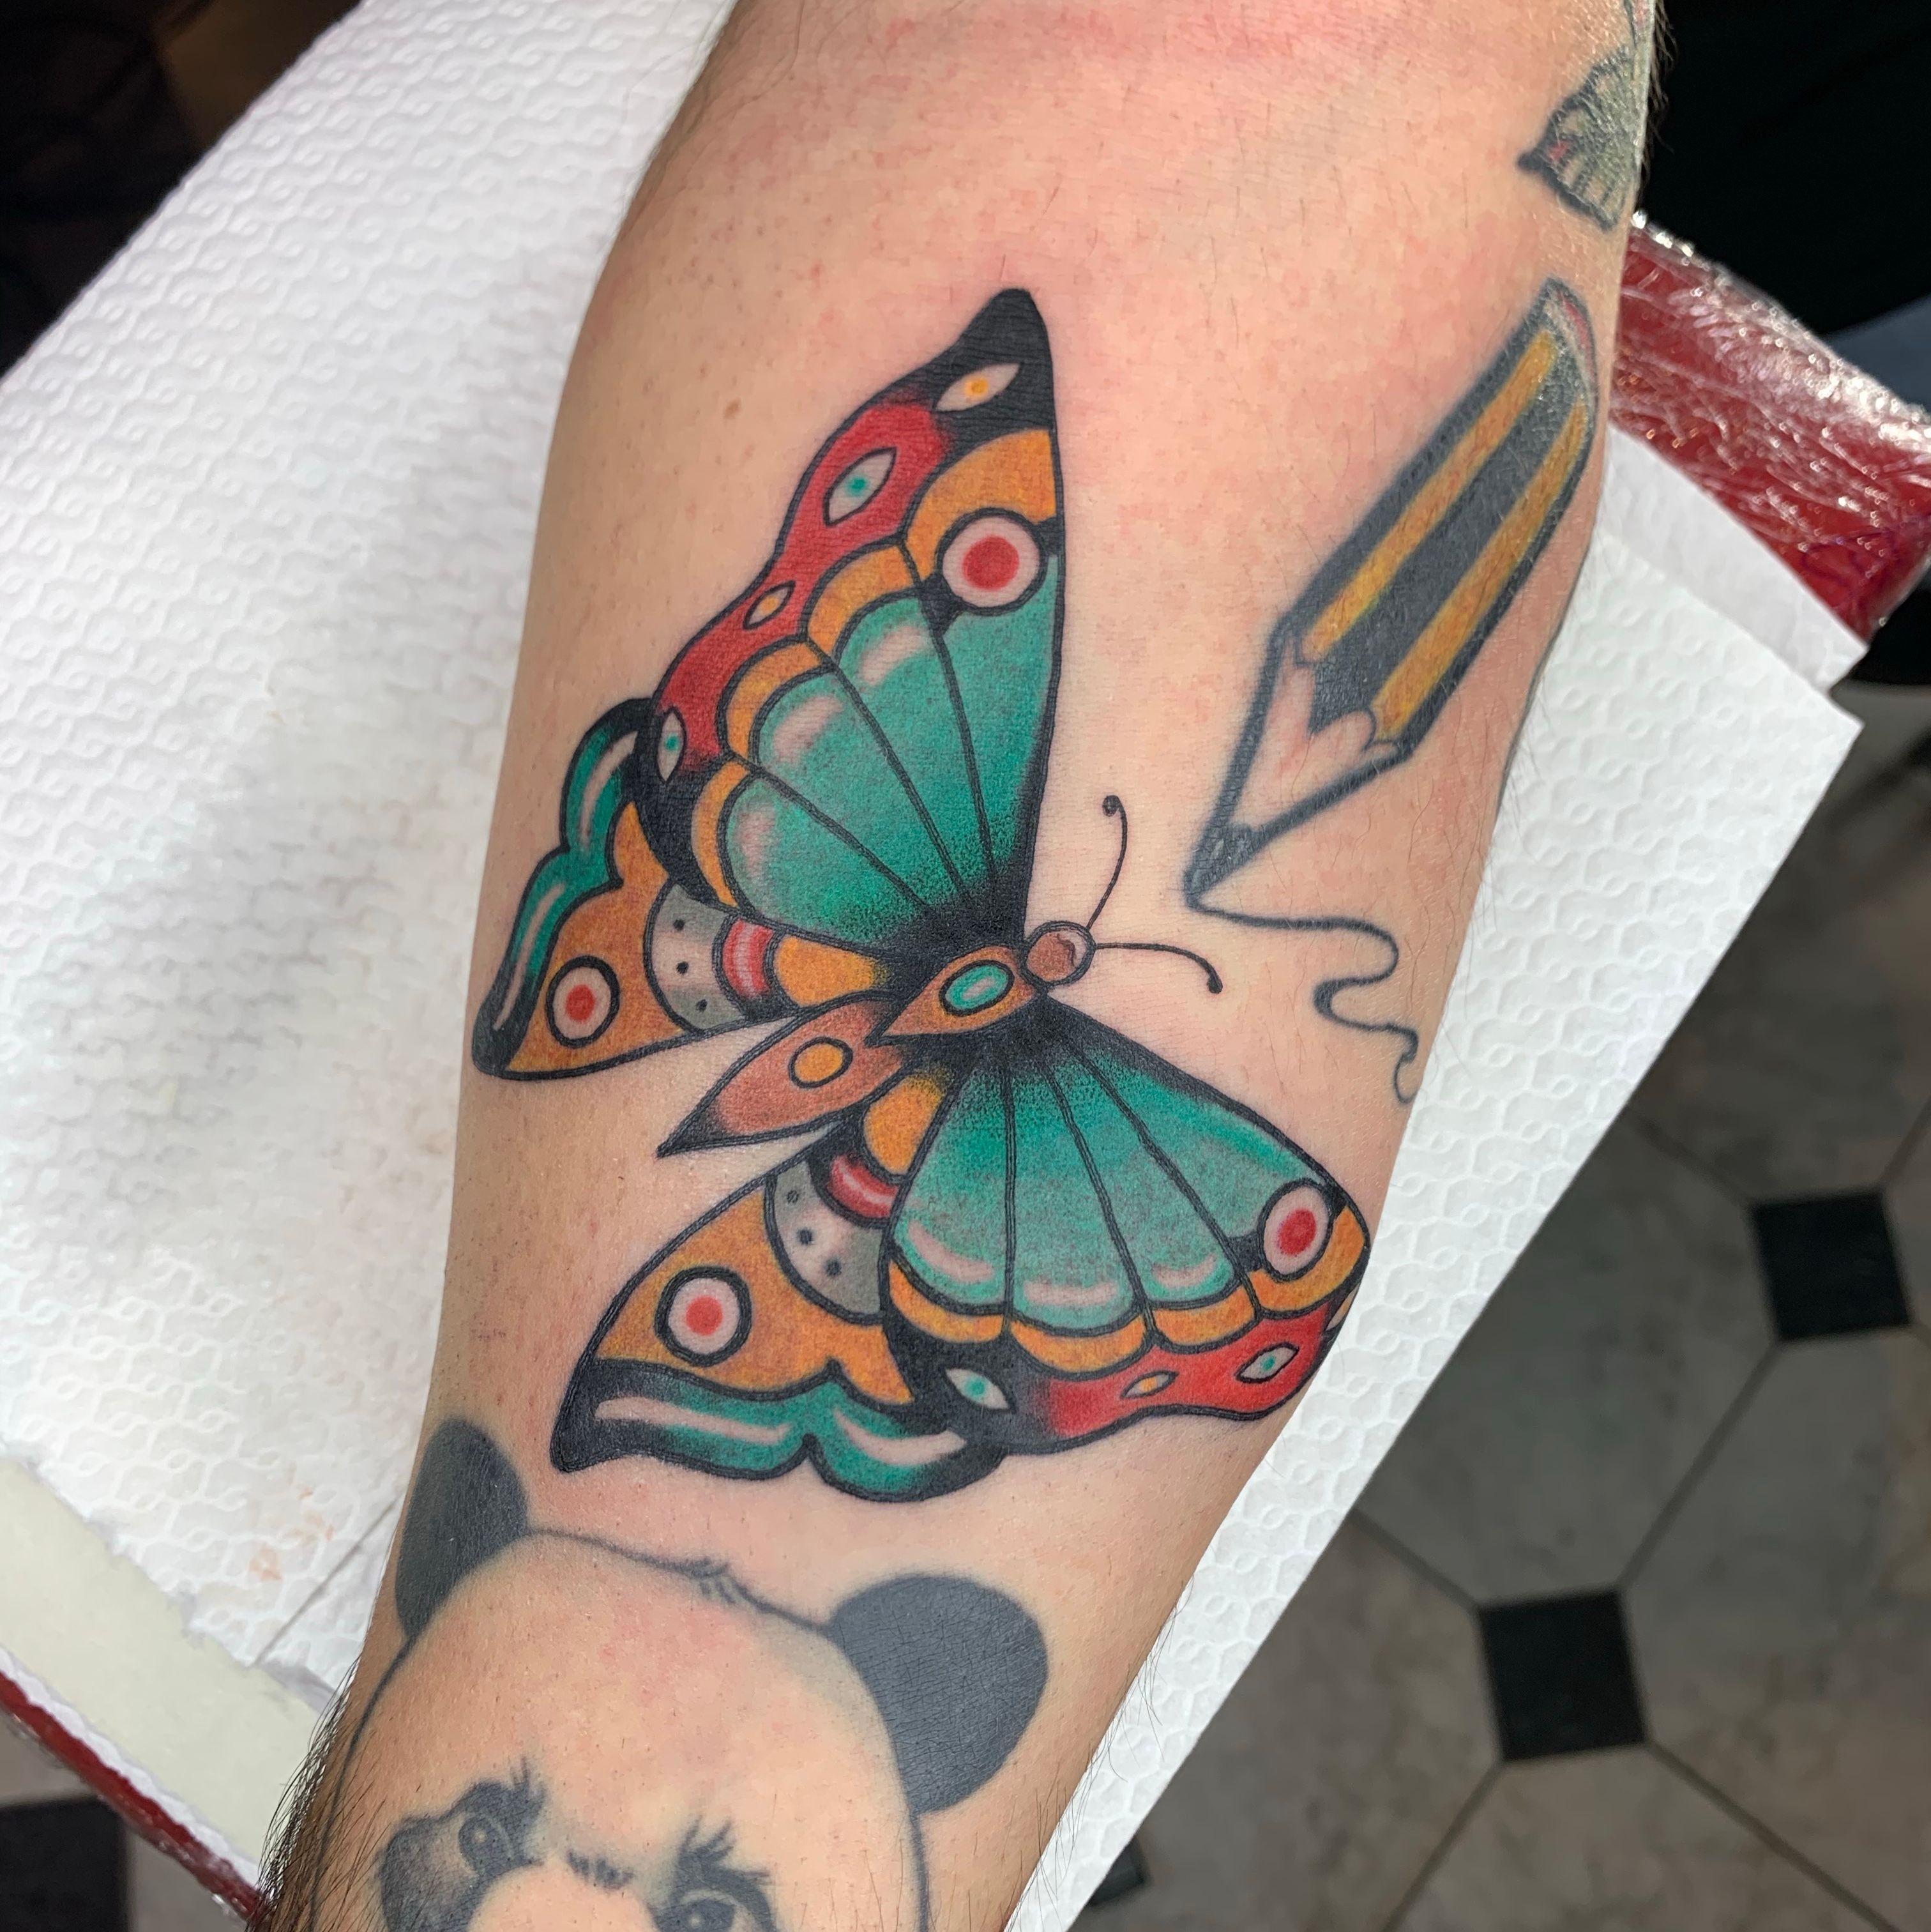 PsychoDelic Butterfly Tattoos  Body Piercings  Little Rock AR